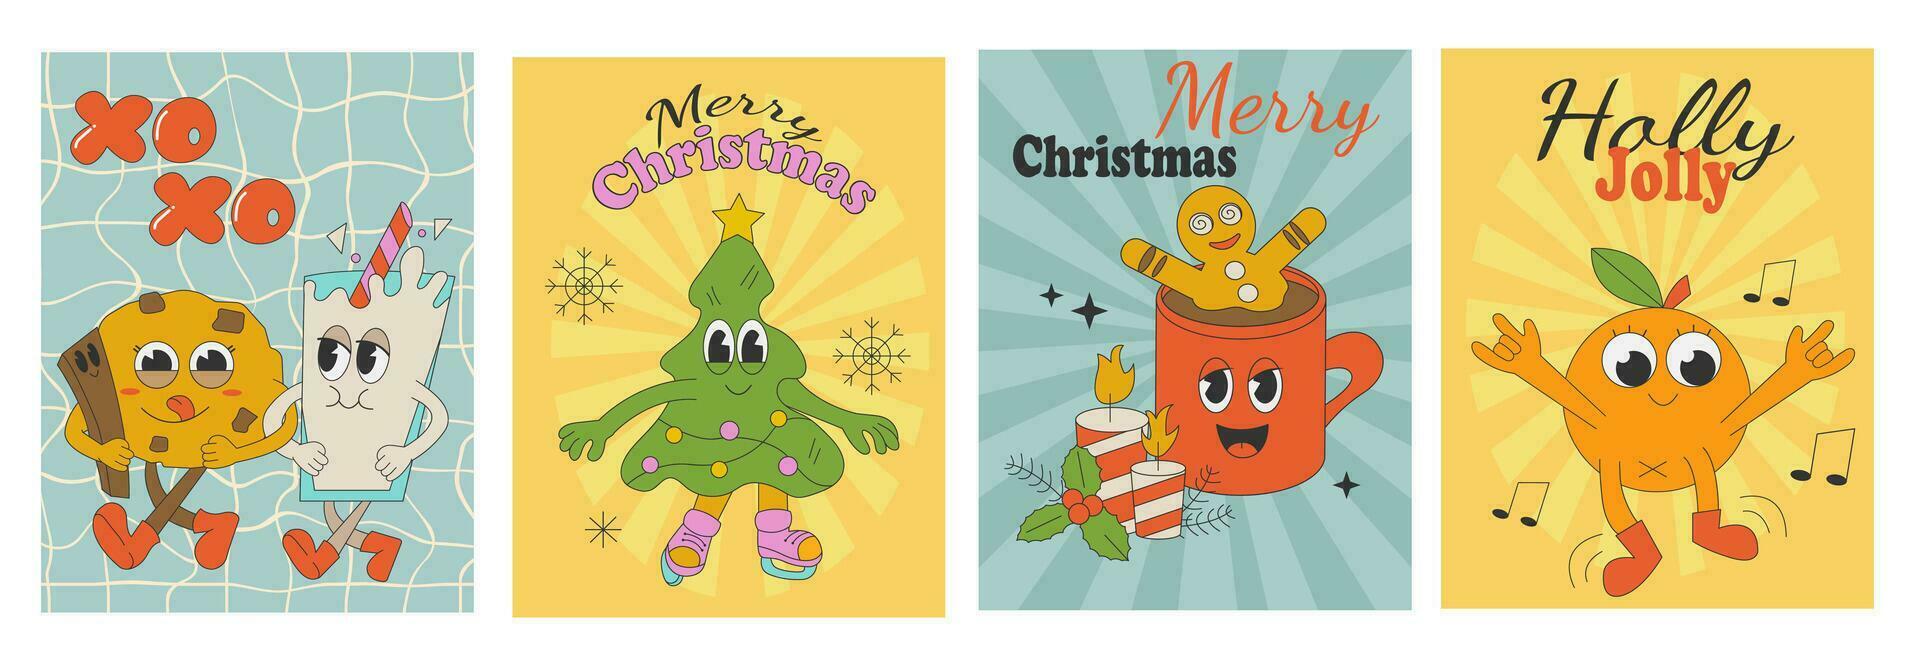 maravilloso hippie Navidad. Papa Noel noel, árbol, regalo, arcoíris, Ho Ho Ho en de moda retro dibujos animados estilo. alegre Navidad y contento nuevo año saludo tarjeta, póster, fiesta invitación vector